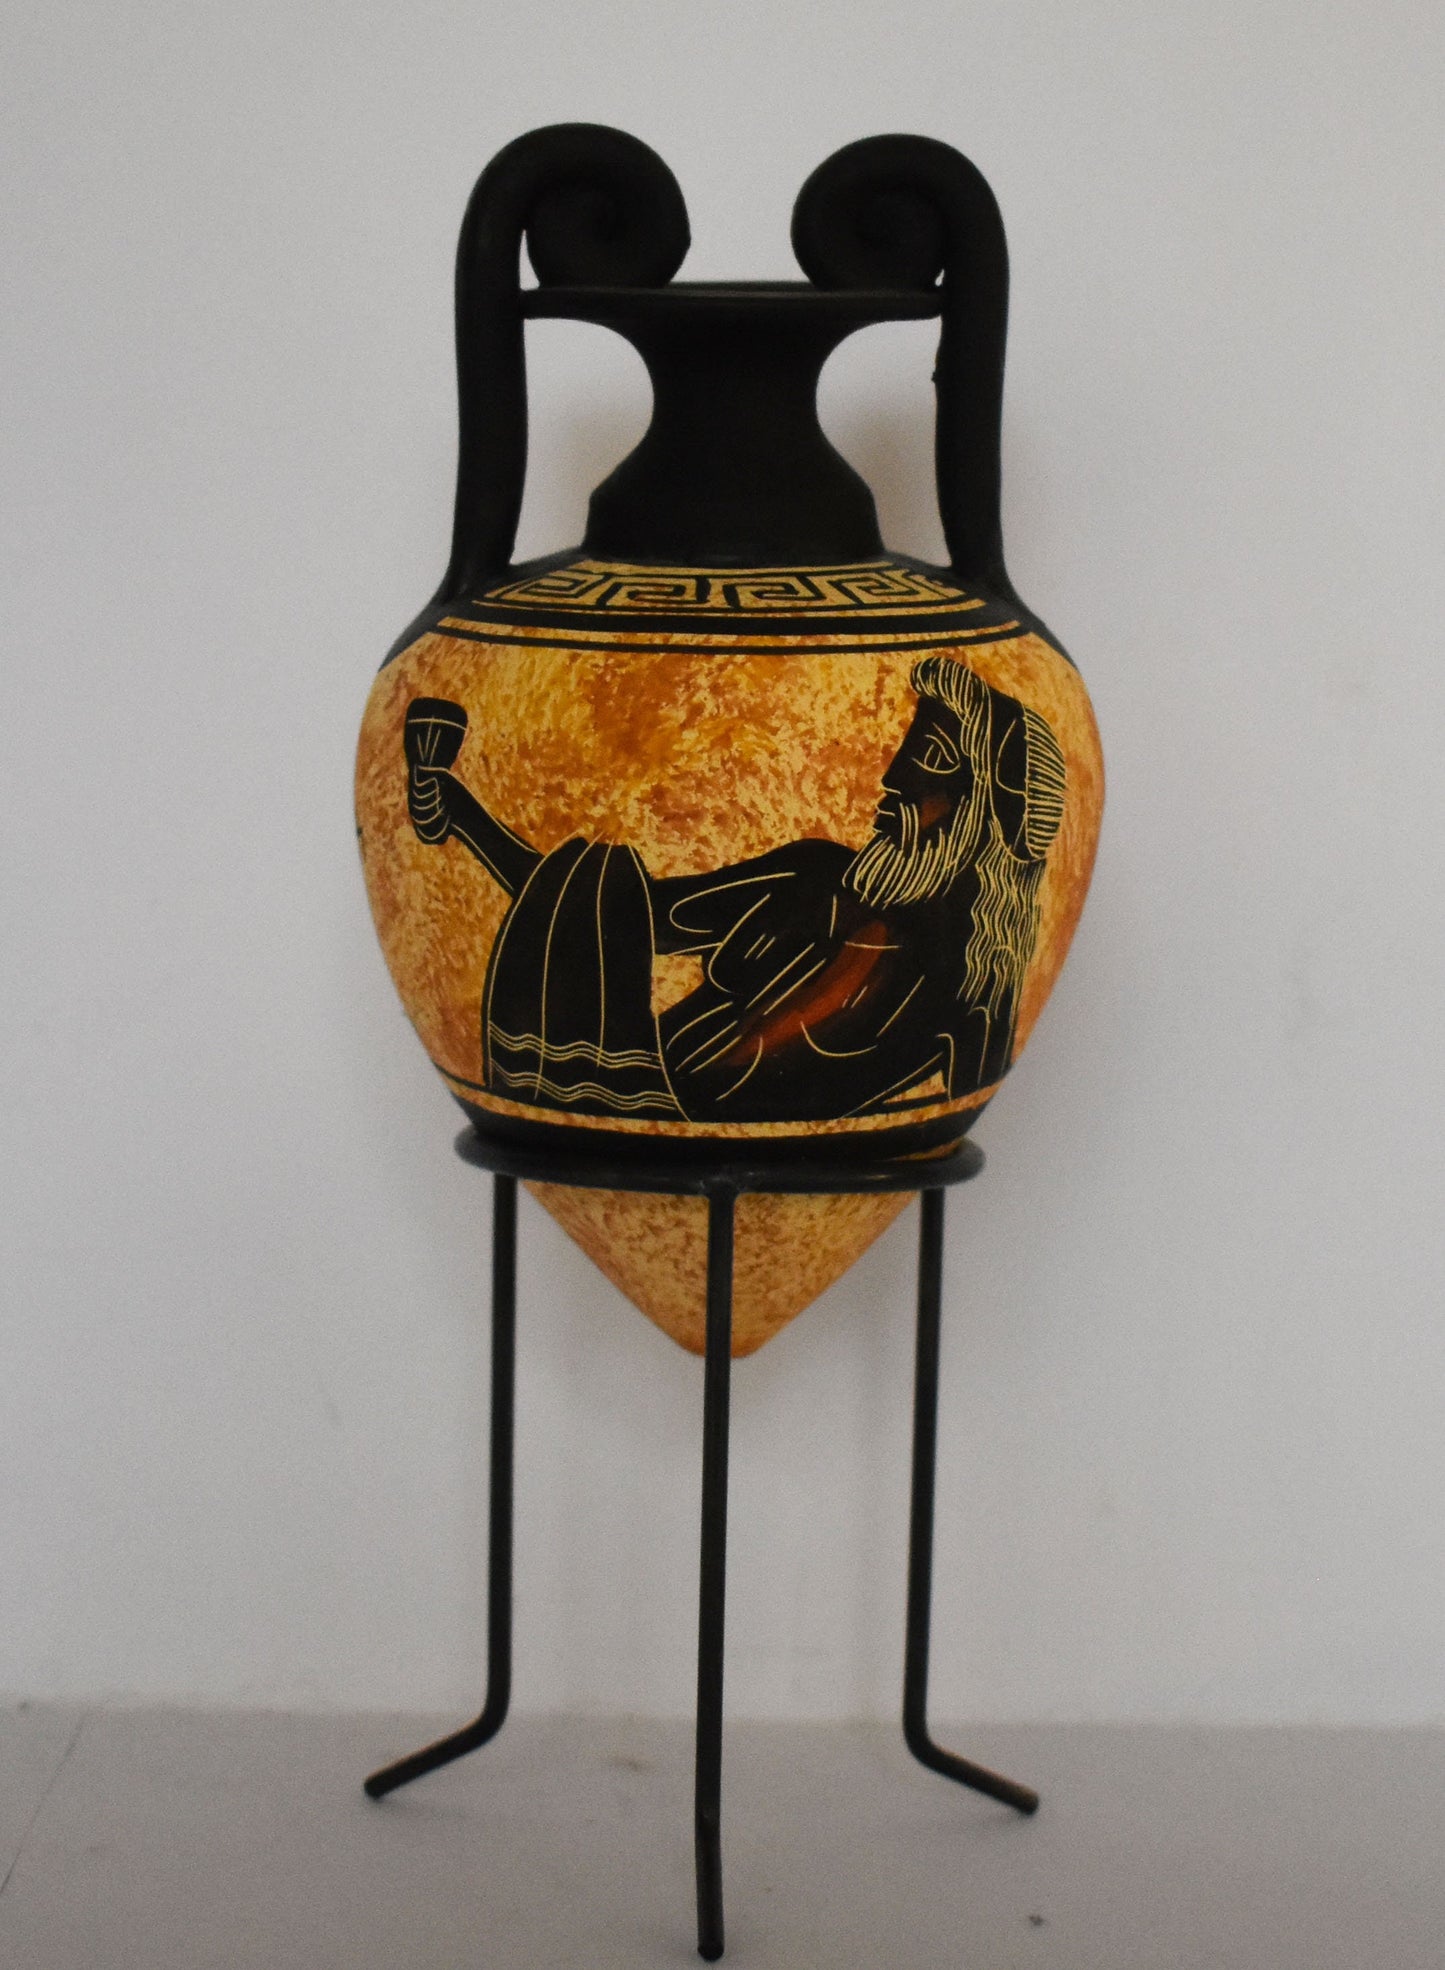 Rhyton - Vessel for Libations or Drinking - Dionysus - God of Vegetation, Wine and Ecstasy. - Floral design - Ceramic Vase